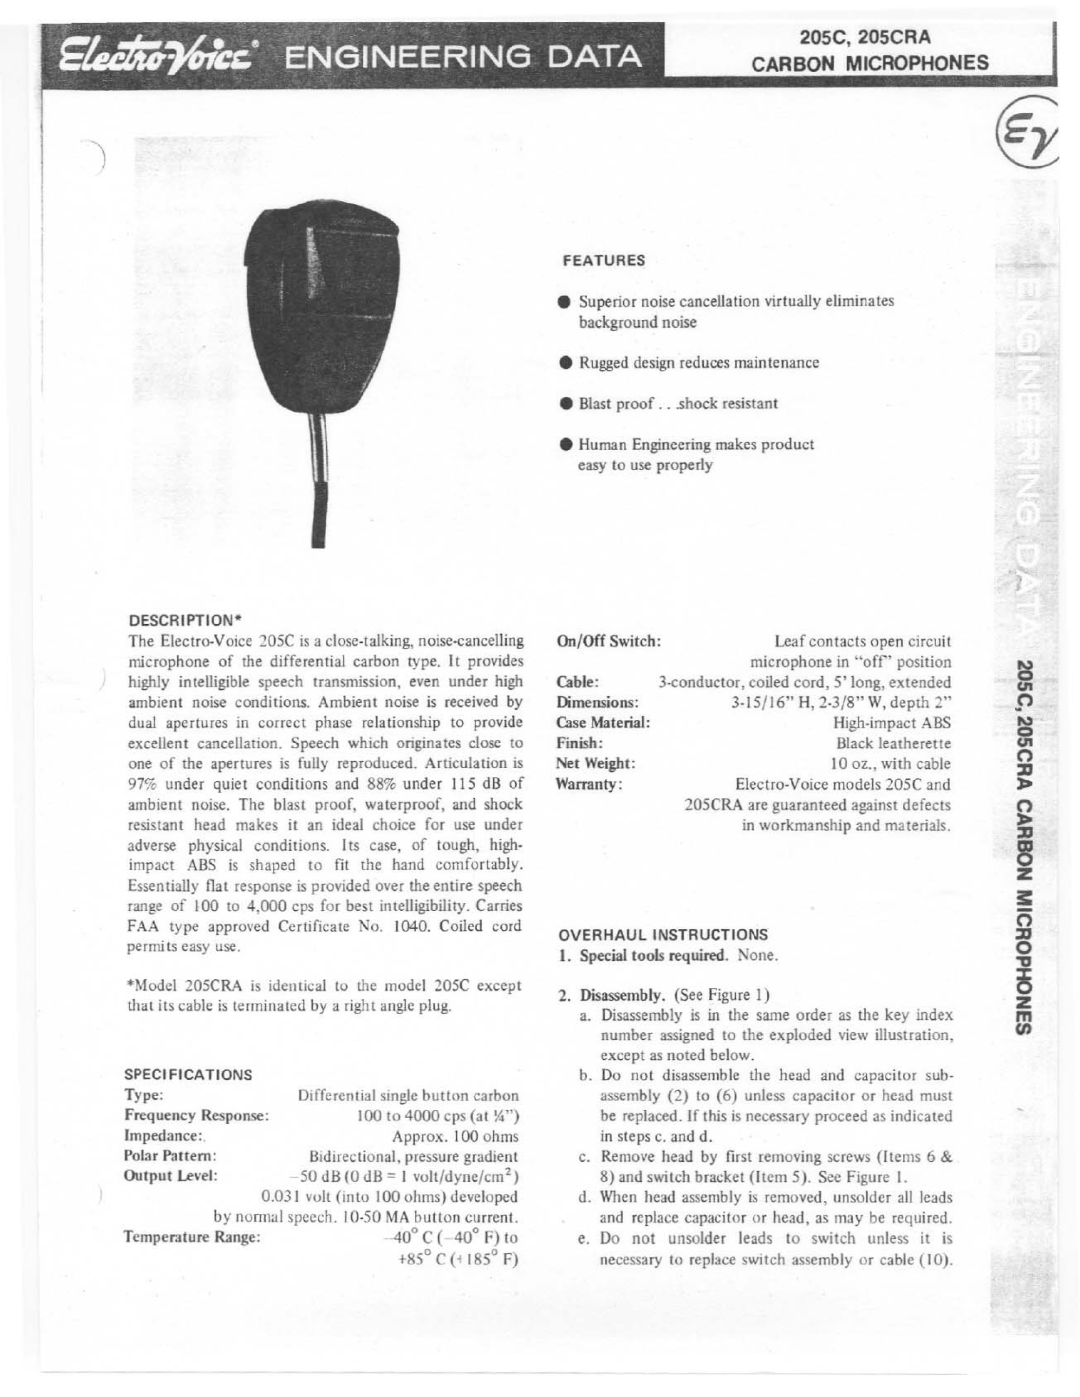 Electro-Voice 205CRA manual 